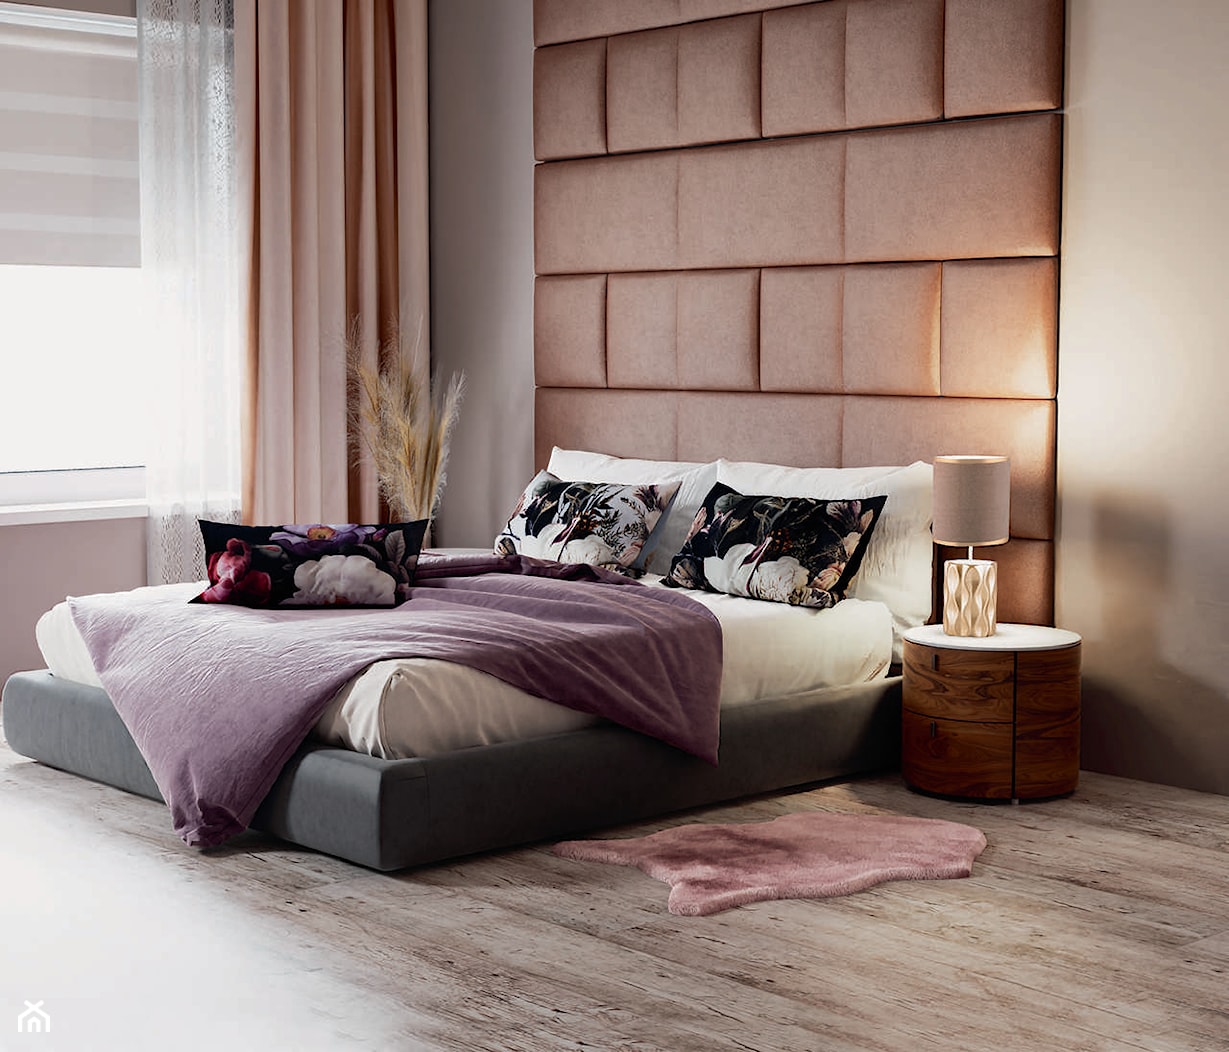 Różowa sypialnia w stylu glamour / nowojorskim - panele tapicerowane na ścianie, piękna pościel w kwiaty i różowe dekoracje - zdjęcie od bricomarche.pl - Homebook